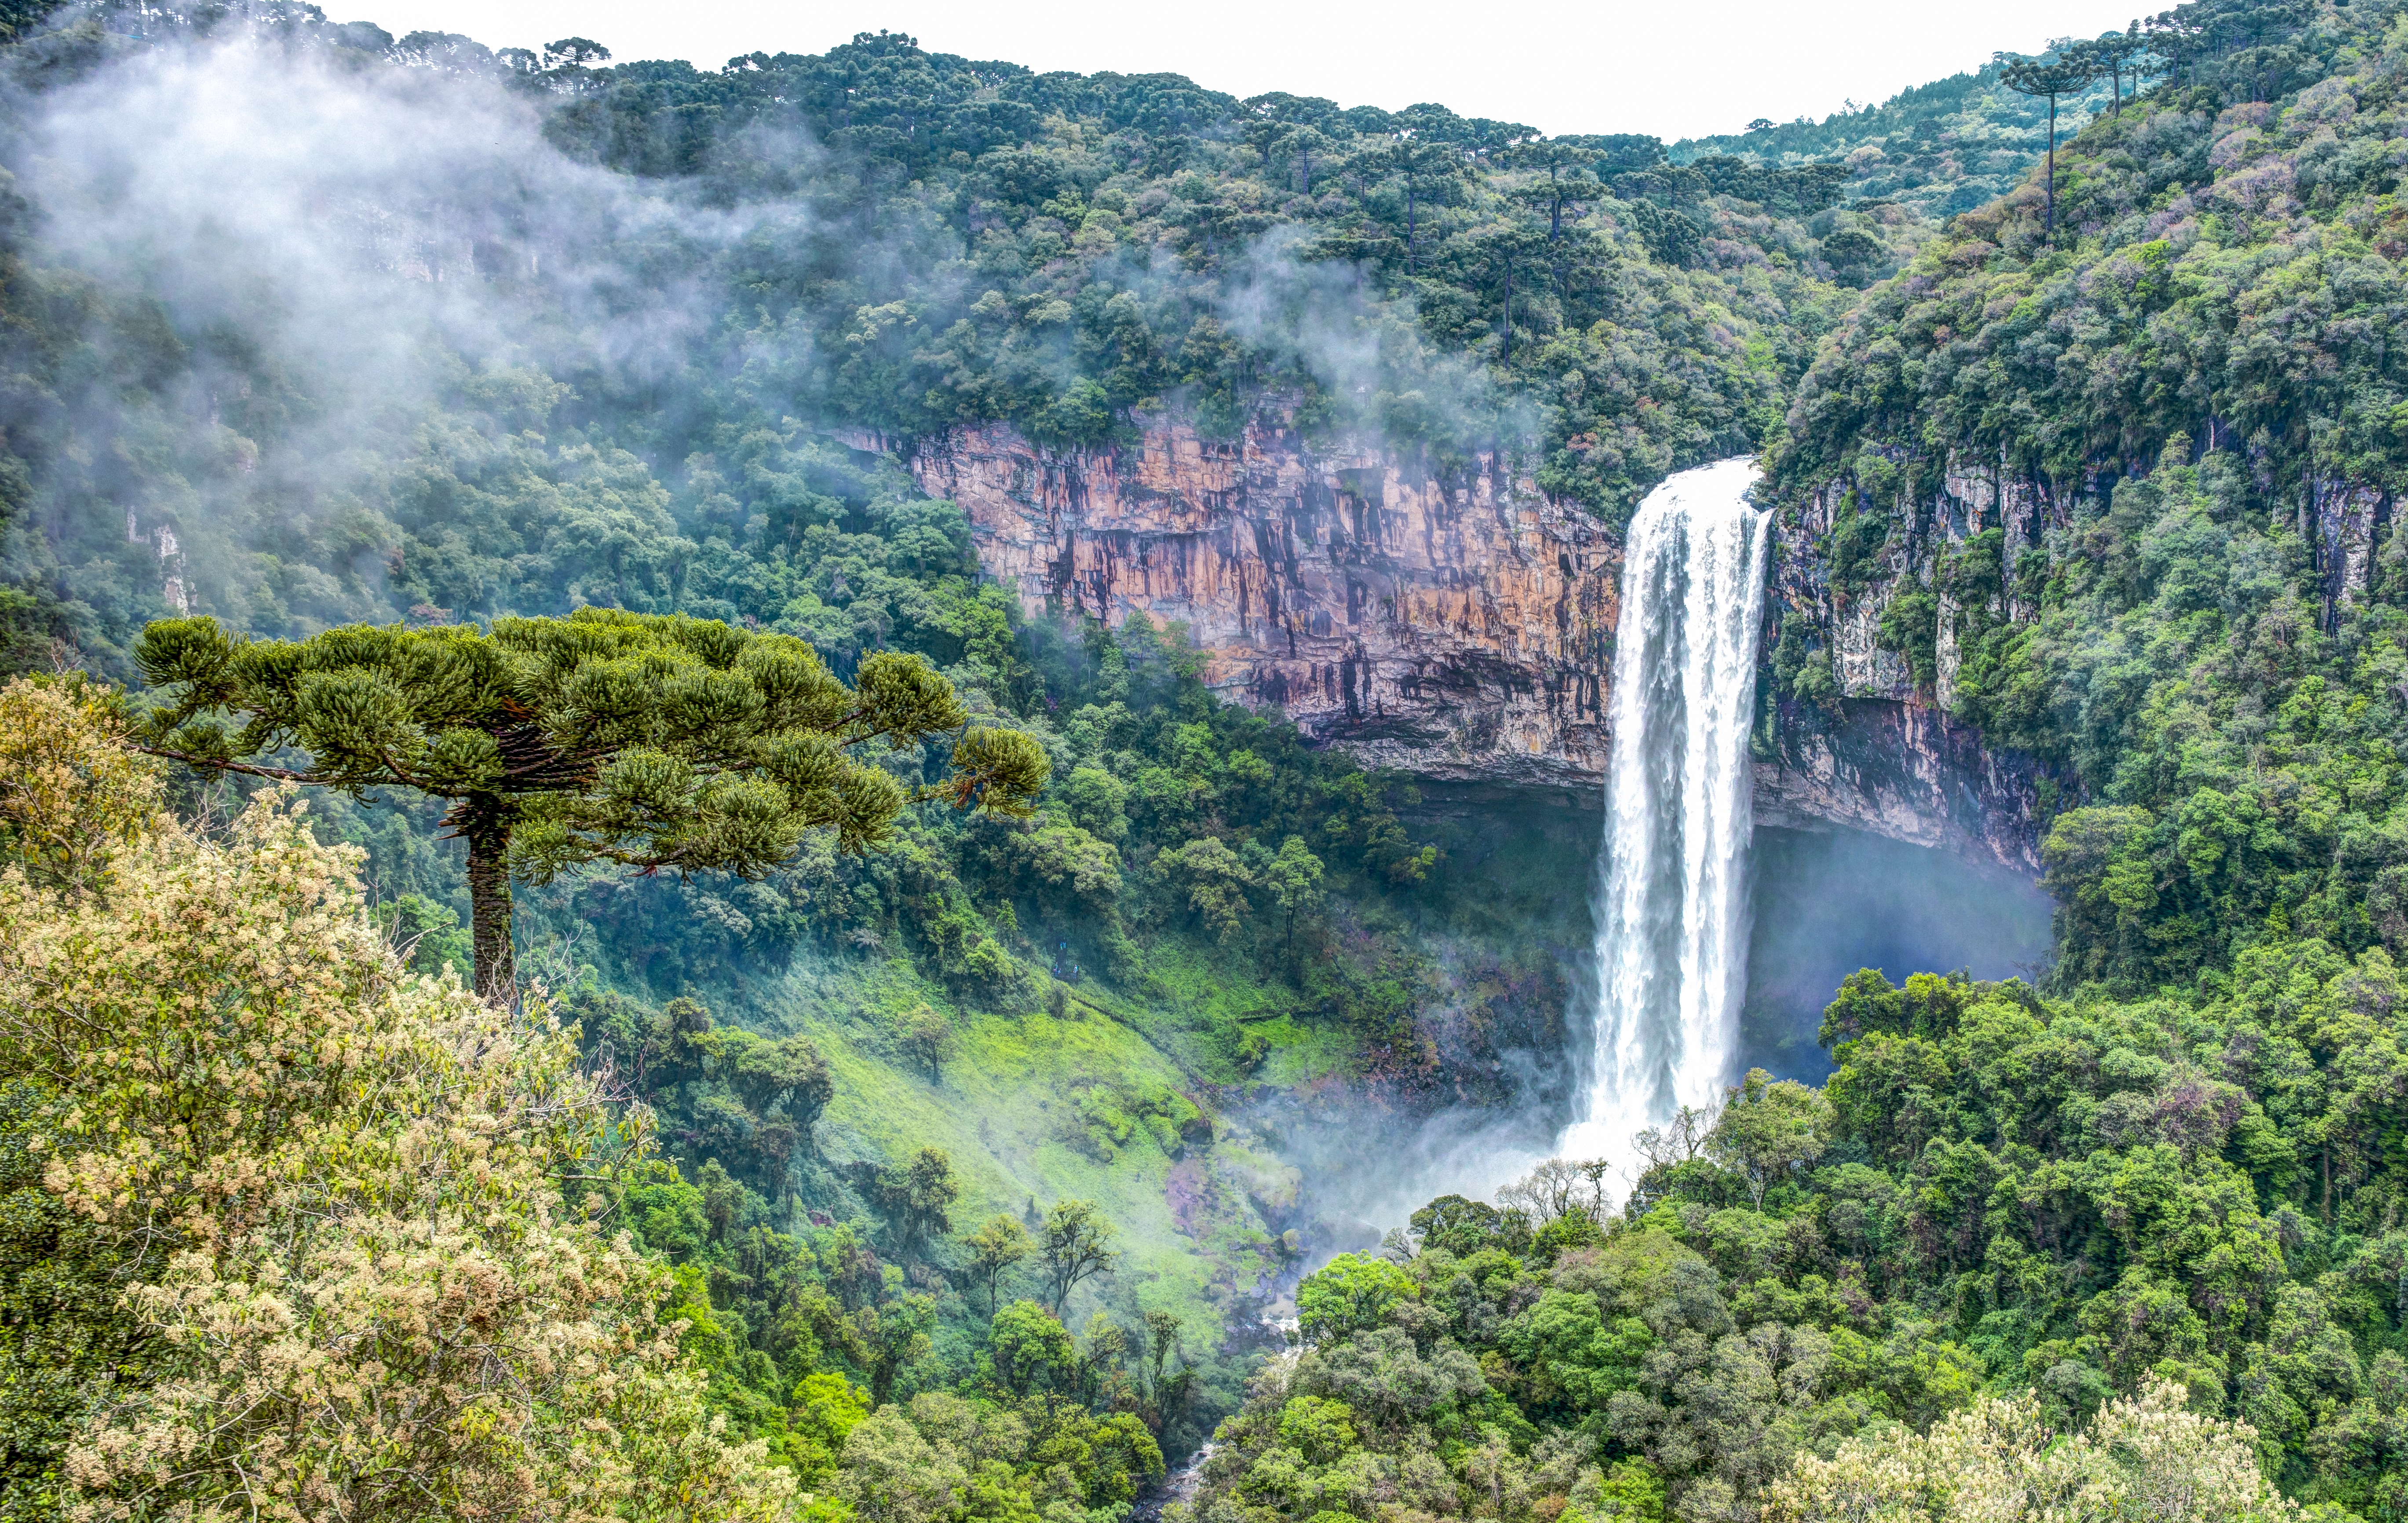 Download 5476x3463 cascata do caracol, caracol falls, waterfall, rio grande do sul, brazil, forest Wallpaper